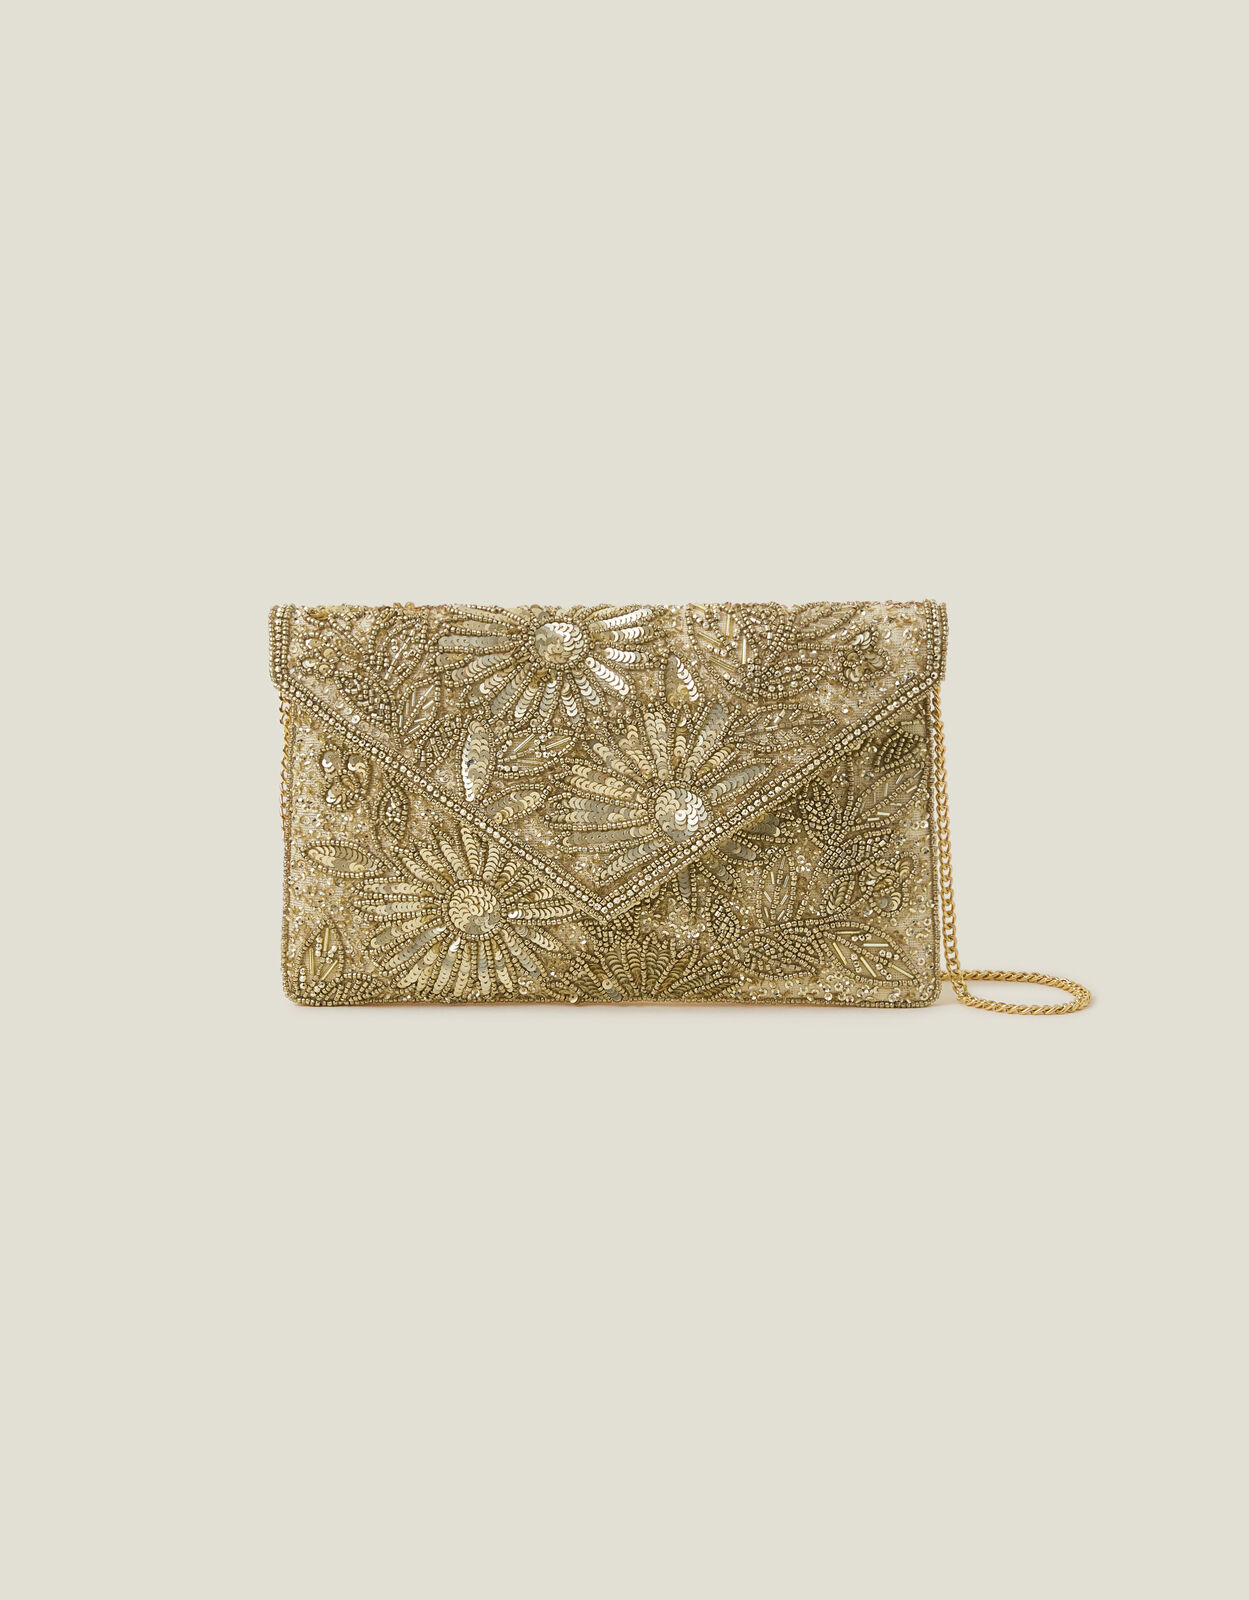 Gold glitter clutch | Gold clutch purse, Purses crossbody, Gold purses